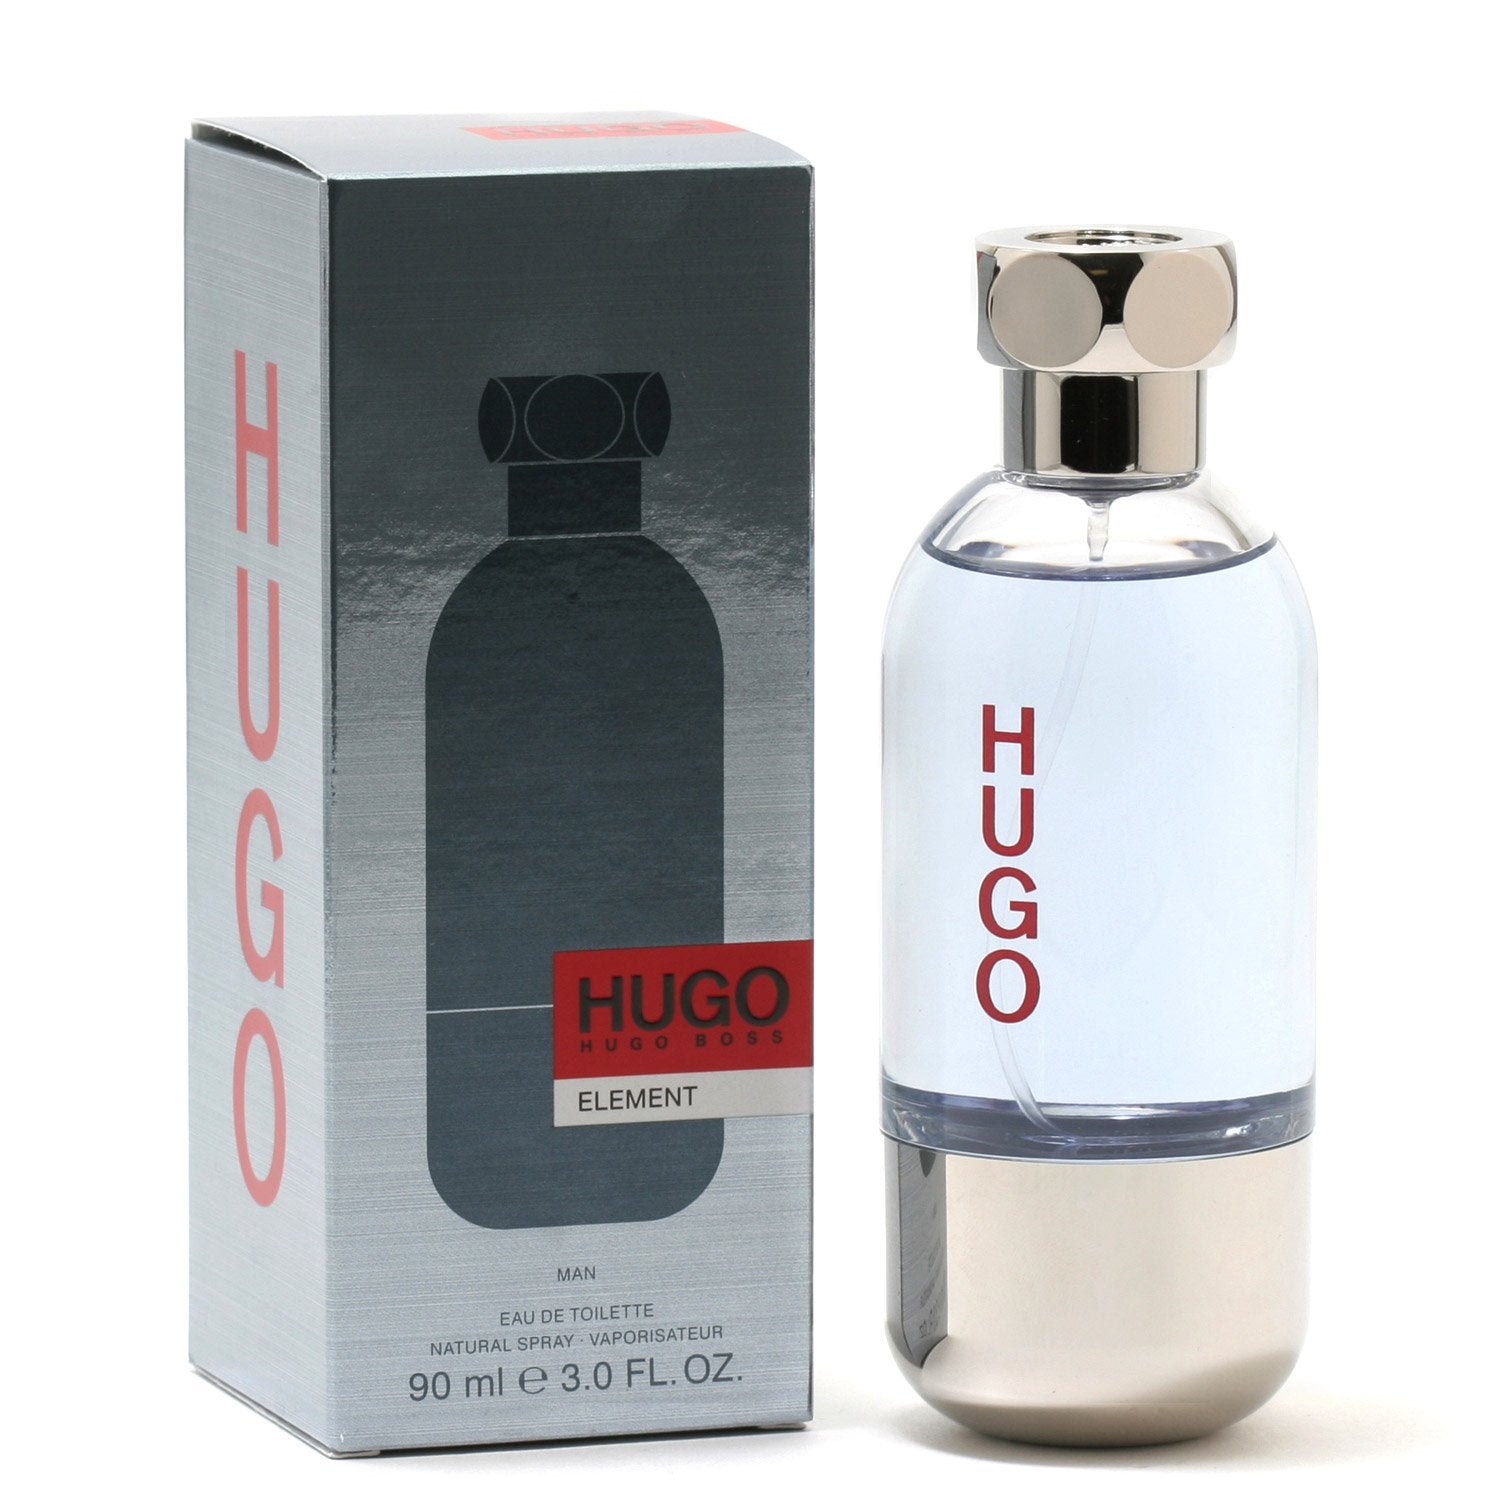 HUGO ELEMENT FOR MEN BY HUGO BOSS - EAU DE TOILETTE – Fragrance Room